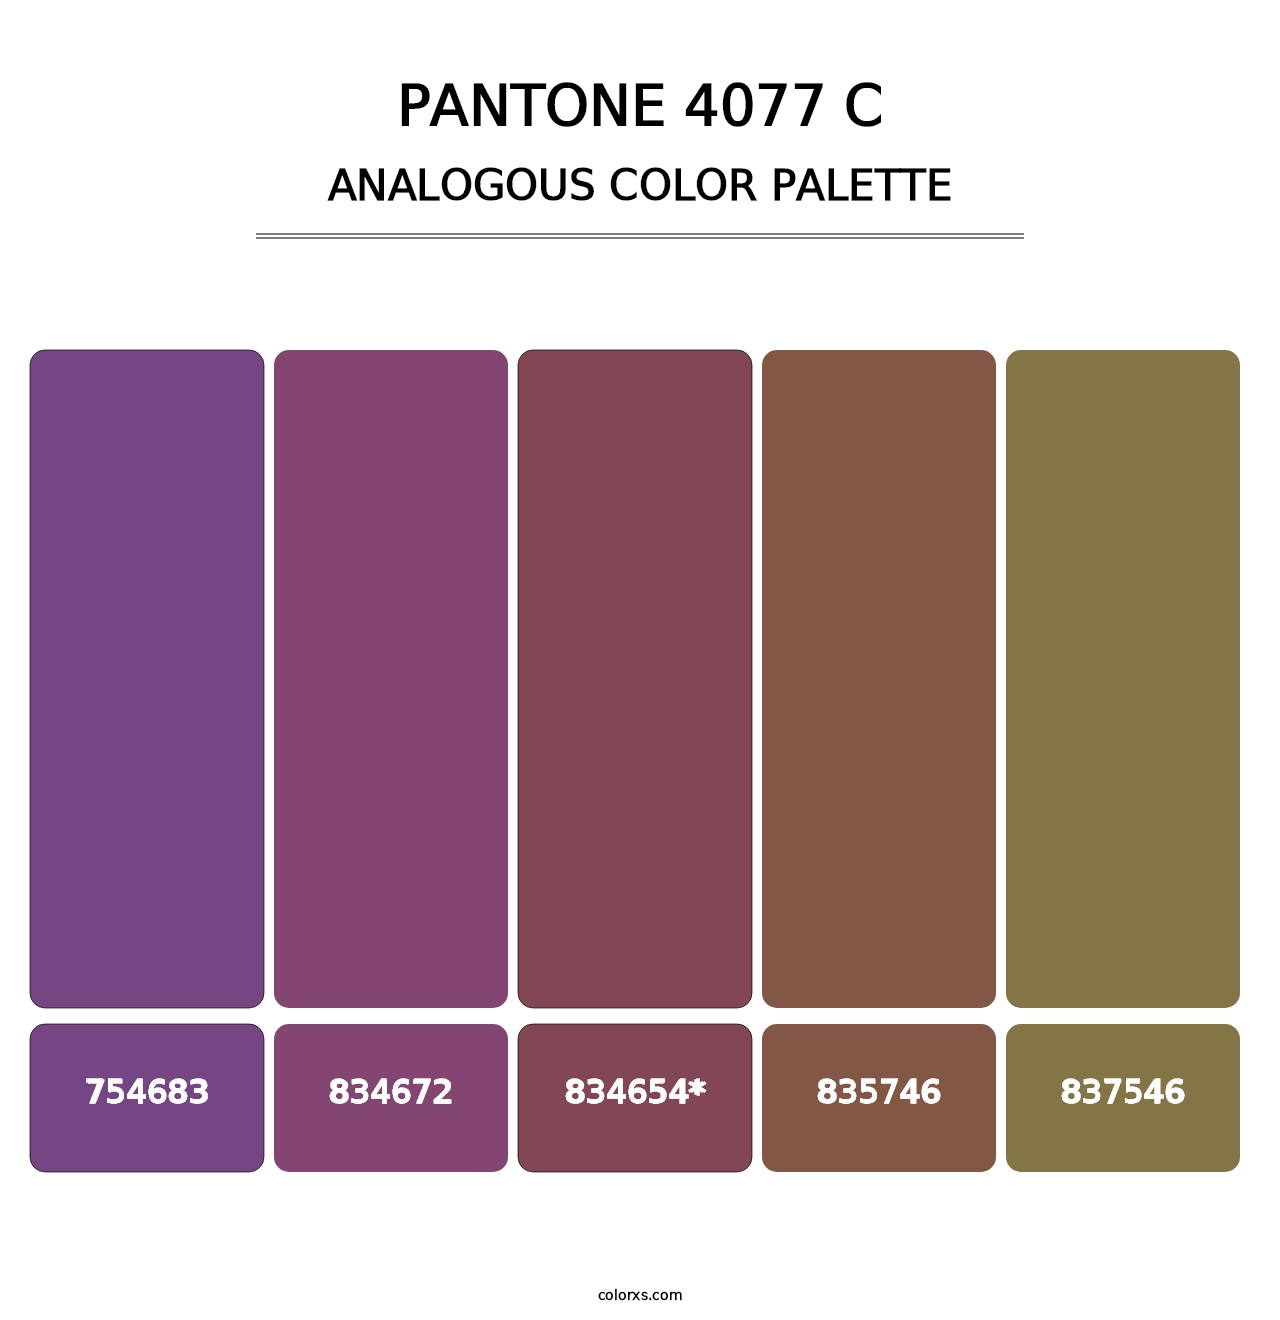 PANTONE 4077 C - Analogous Color Palette